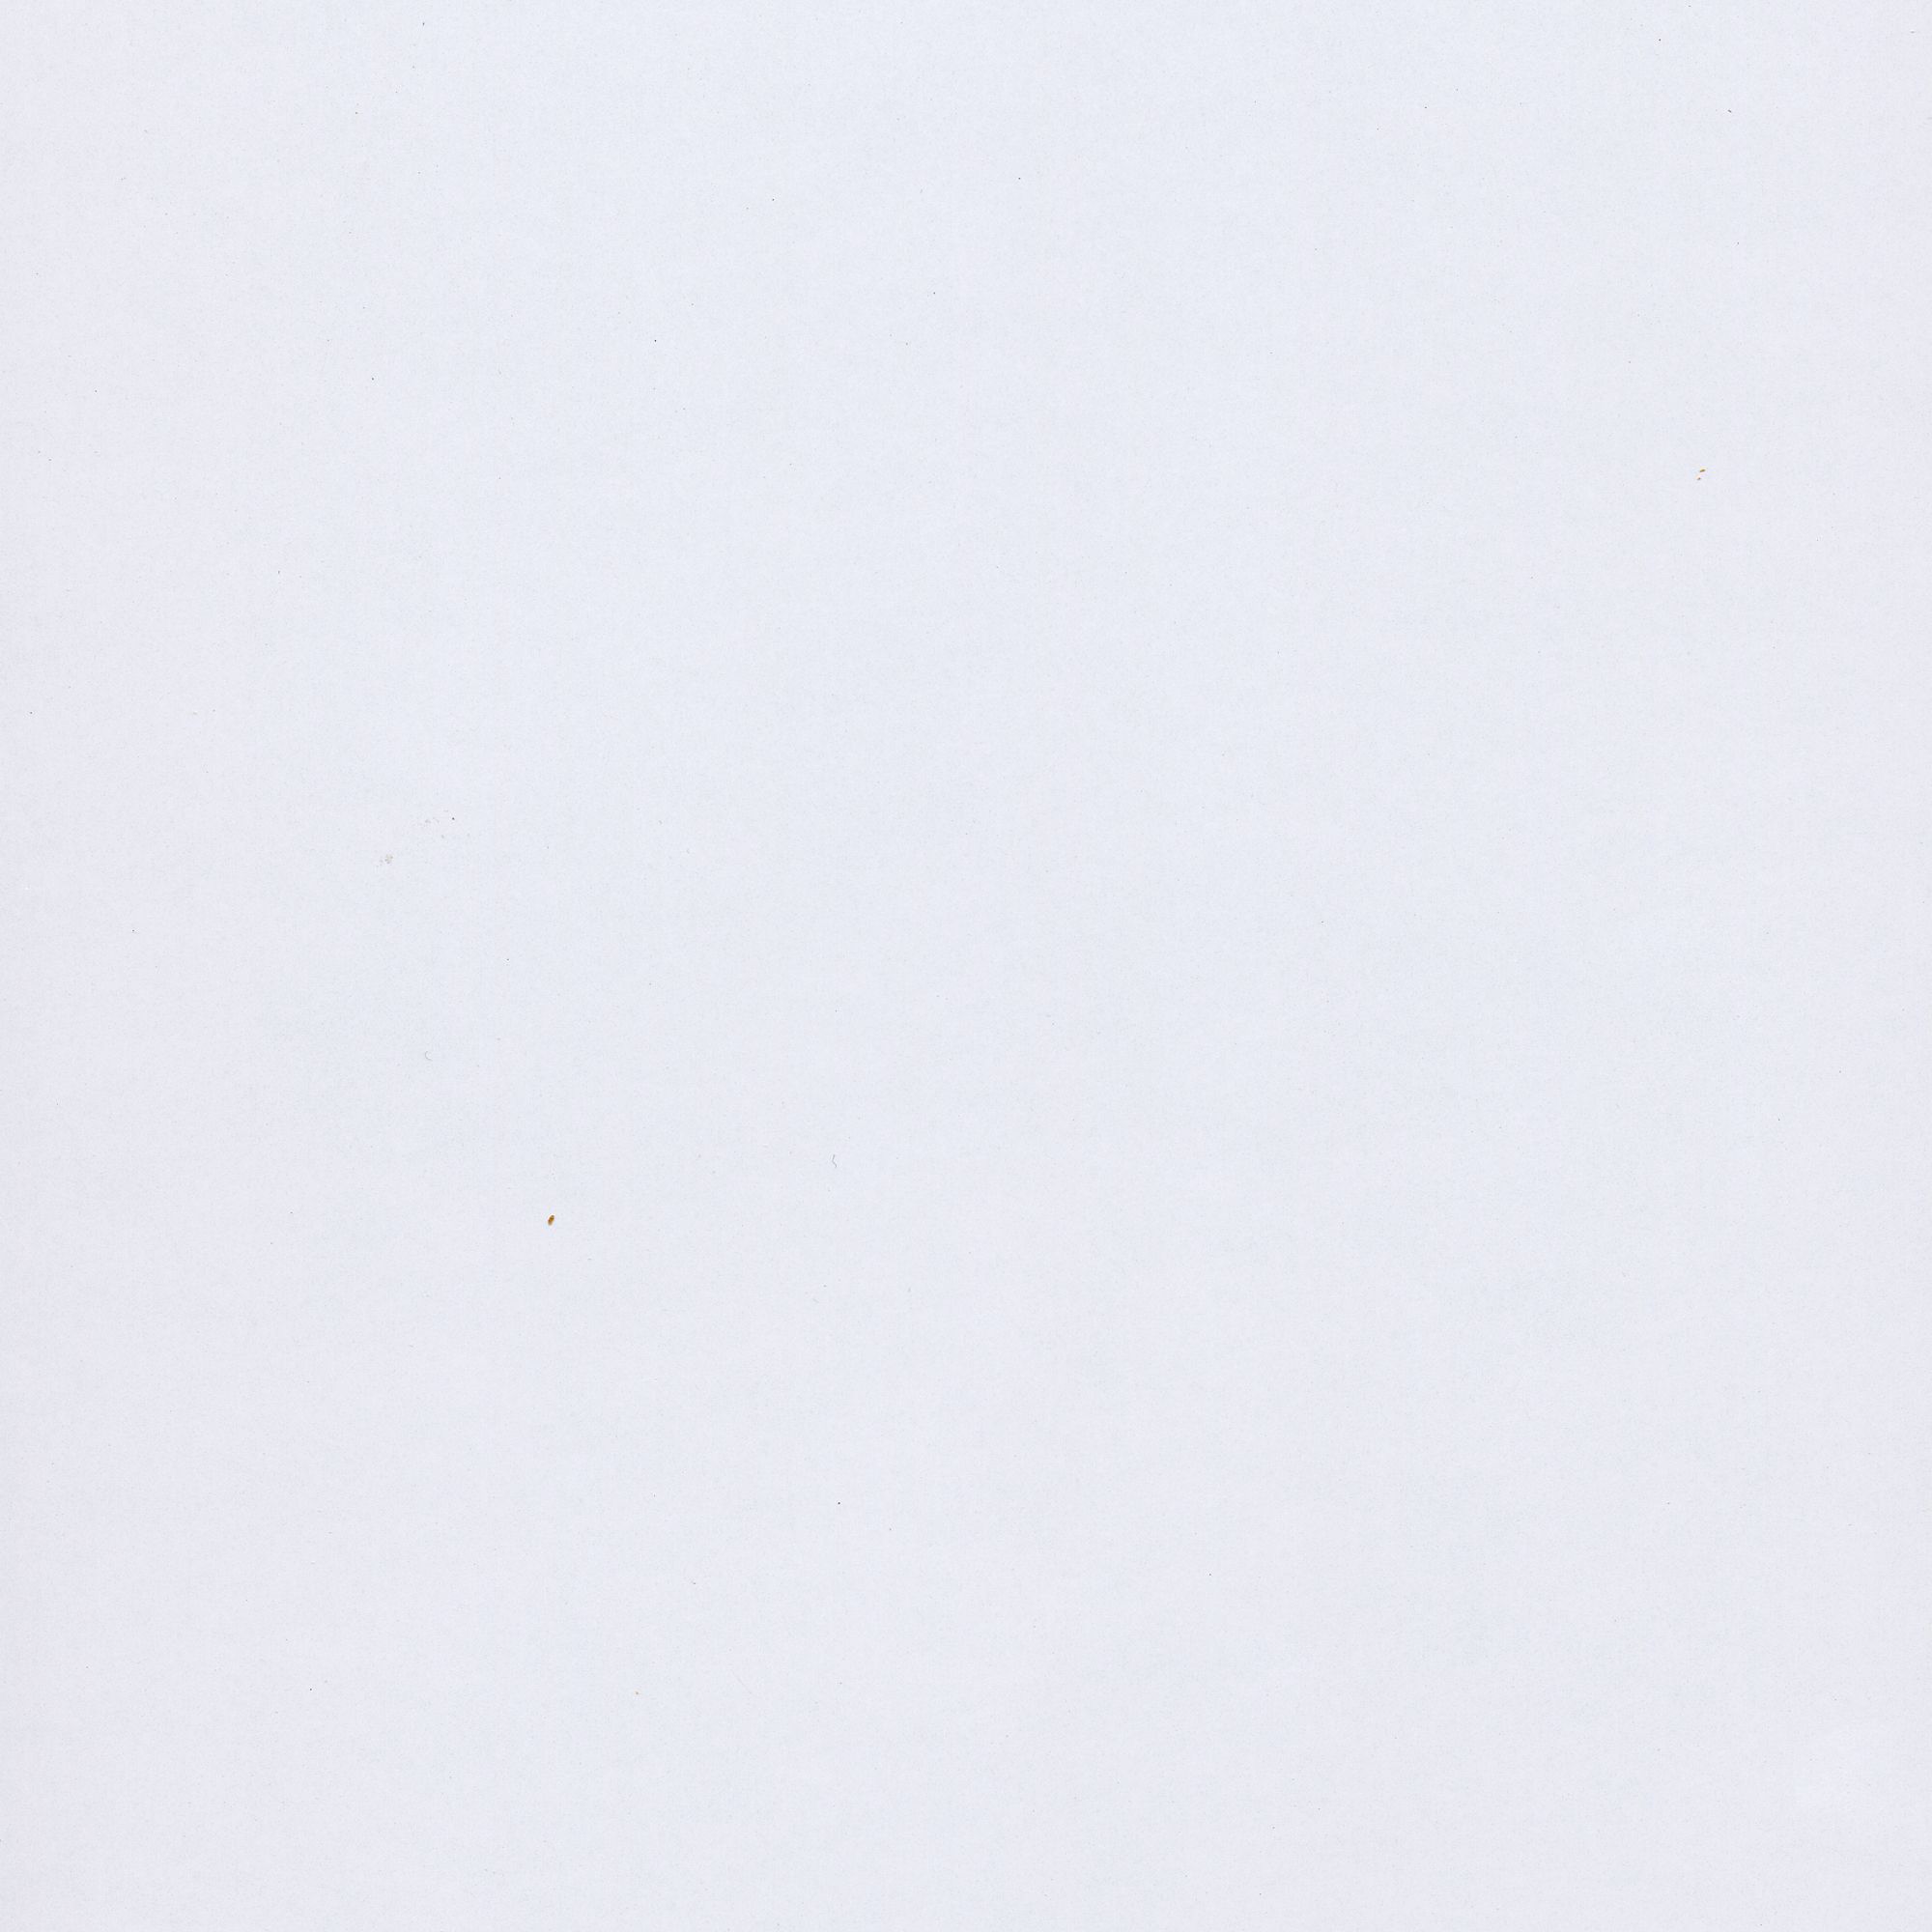 Splashwall Impressions Gloss White gloss Clean cut 3 sided Shower Panel kit (L)2420mm (W)1200mm (T)11mm